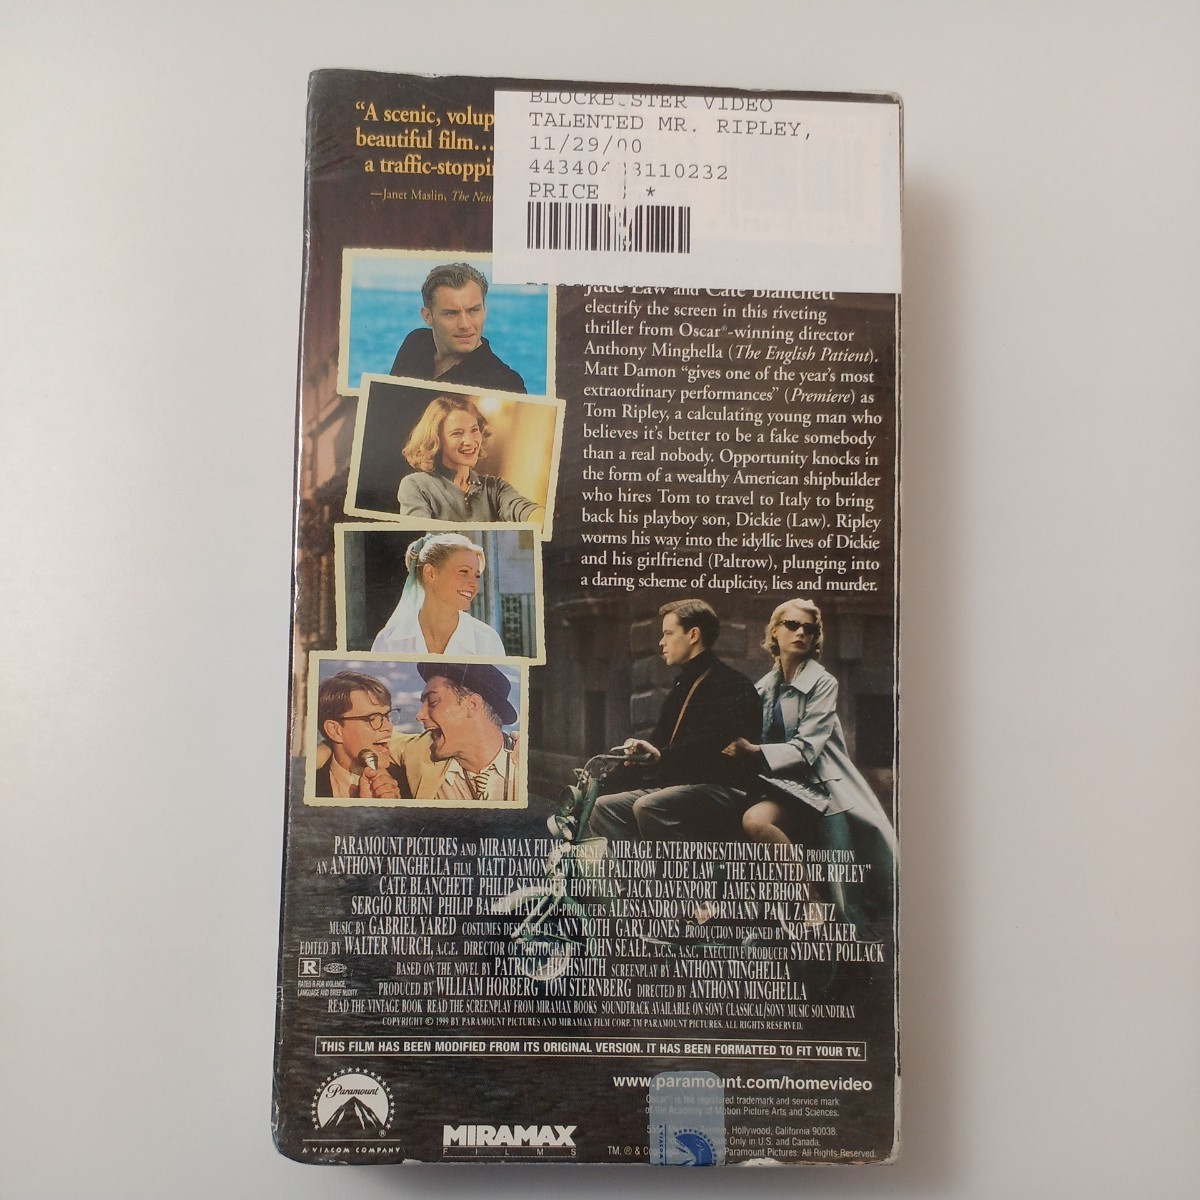 zvd-21♪The Talented Mr. Ripley [VHS]ビデオ 60分 マット デイモン、グウィネス パルトロウ他プロモーション インタビュー